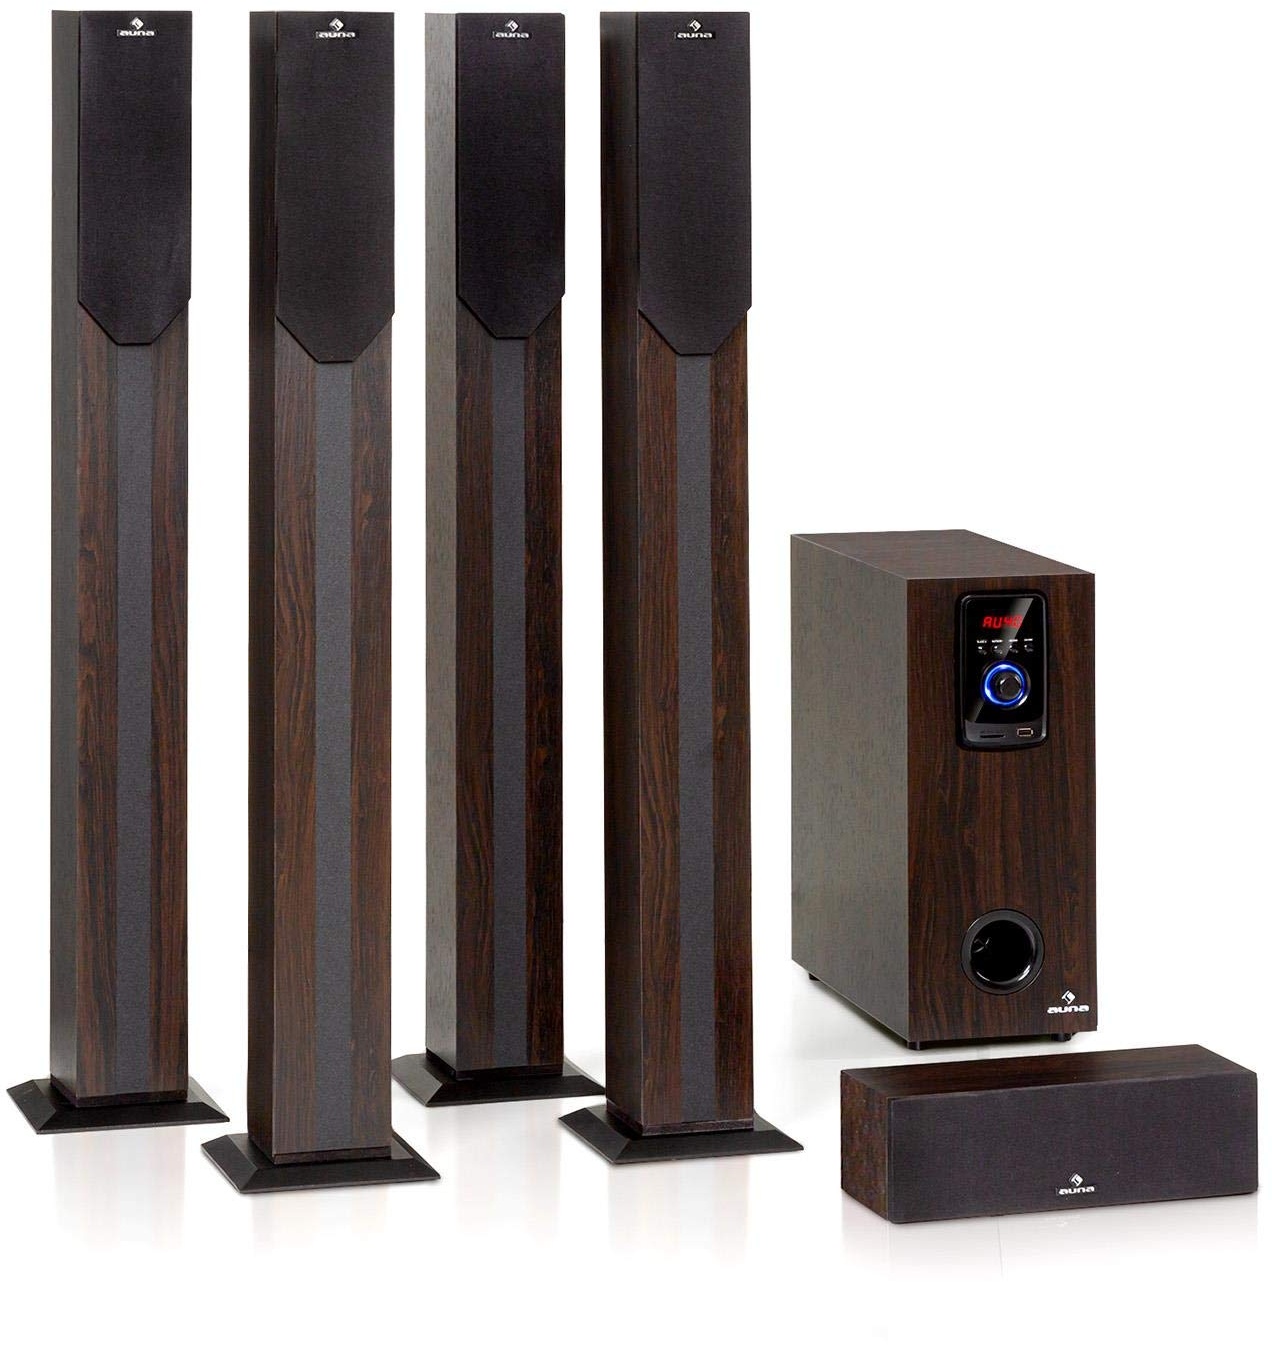 auna Areal Elegance 5.1 Soundsystem - Lautsprechersystem, Heimkinosystem mit 190 Watt RMS, Heimkino mit 5" Subwoofer, 5 x Satelliten-Lautsprecher (3"+5"), Bluetooth, USB/SD, dunkle Holzoptik